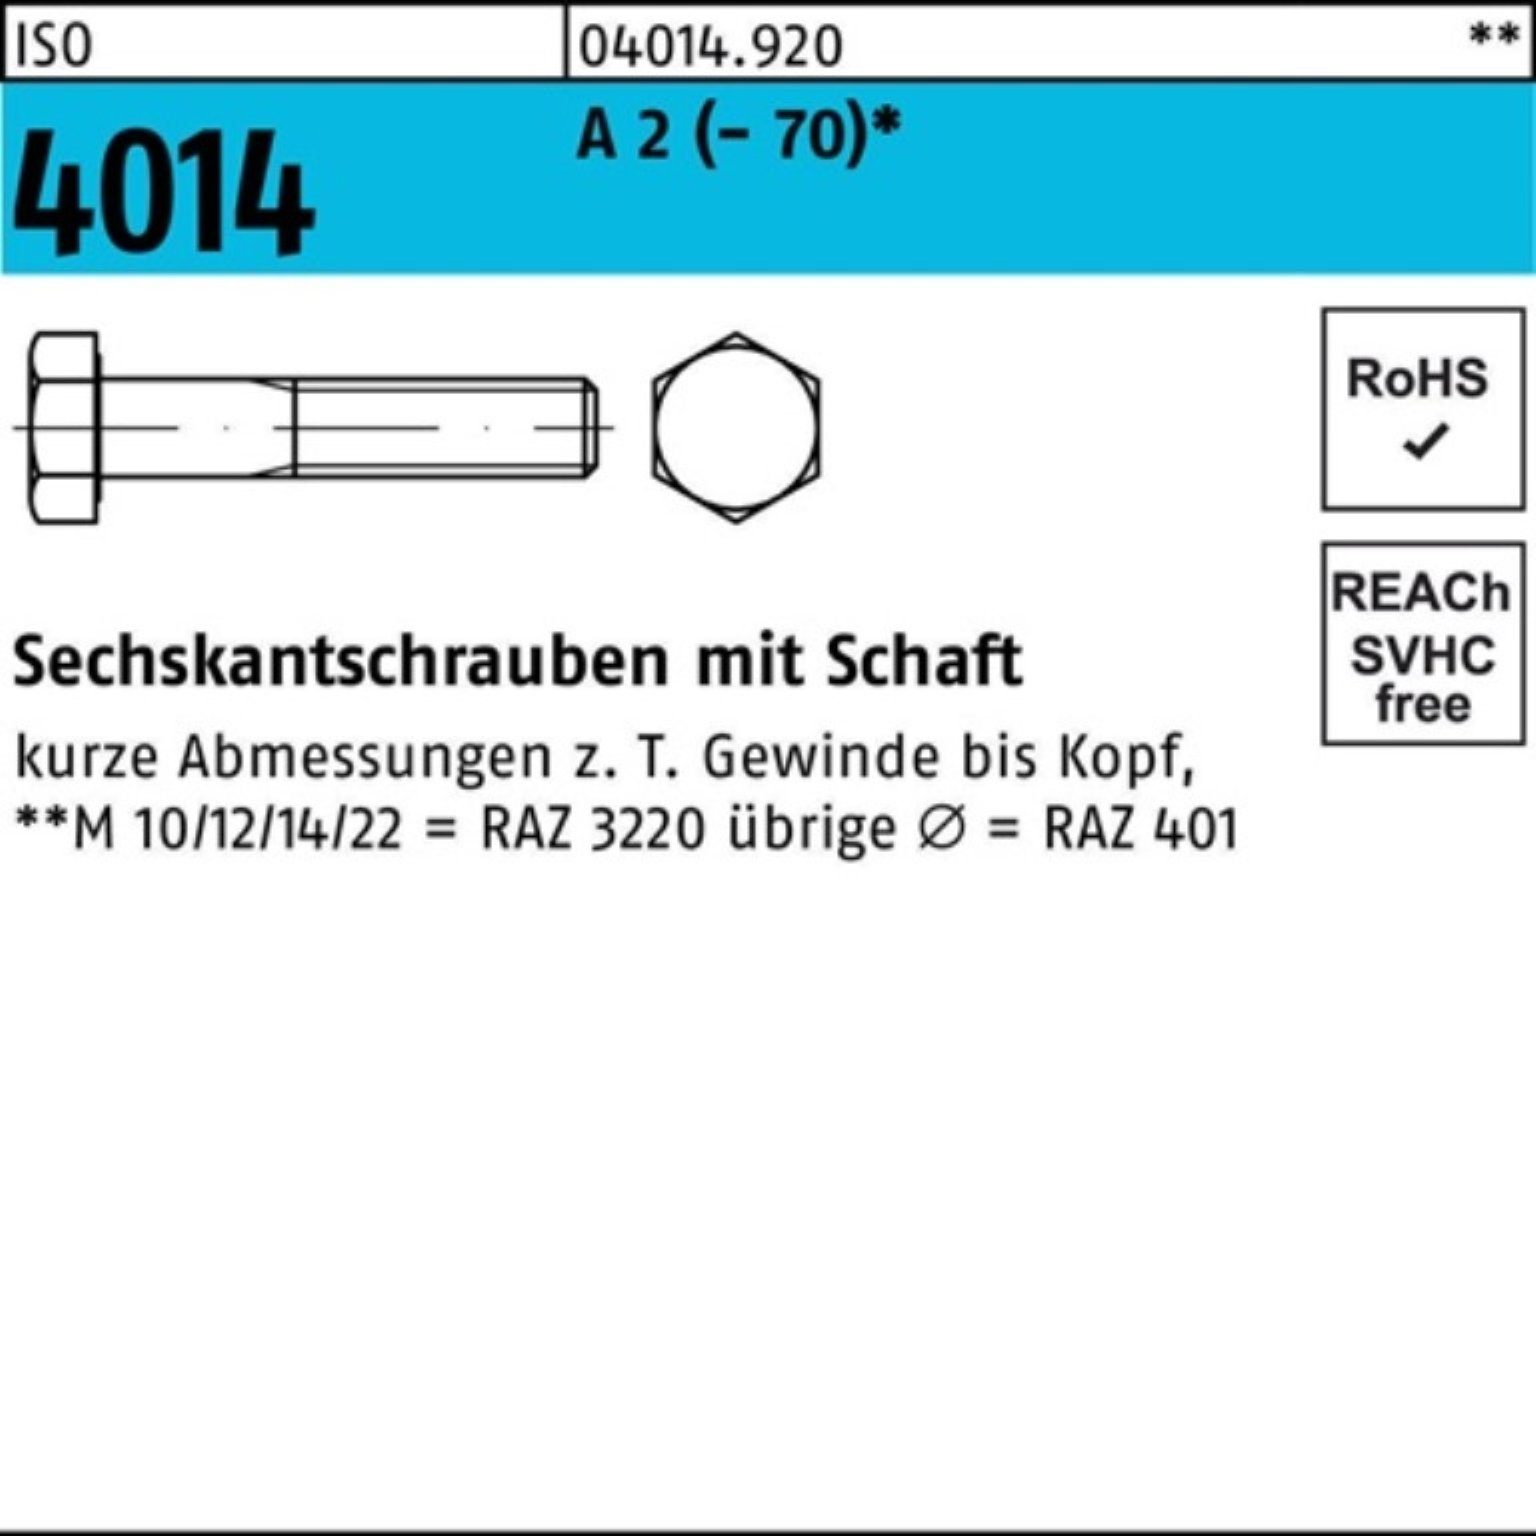 Bufab Sechskantschraube 100er Pack Sechskantschraube ISO 4014 Schaft M24x 210 A 2 (70) 1 St